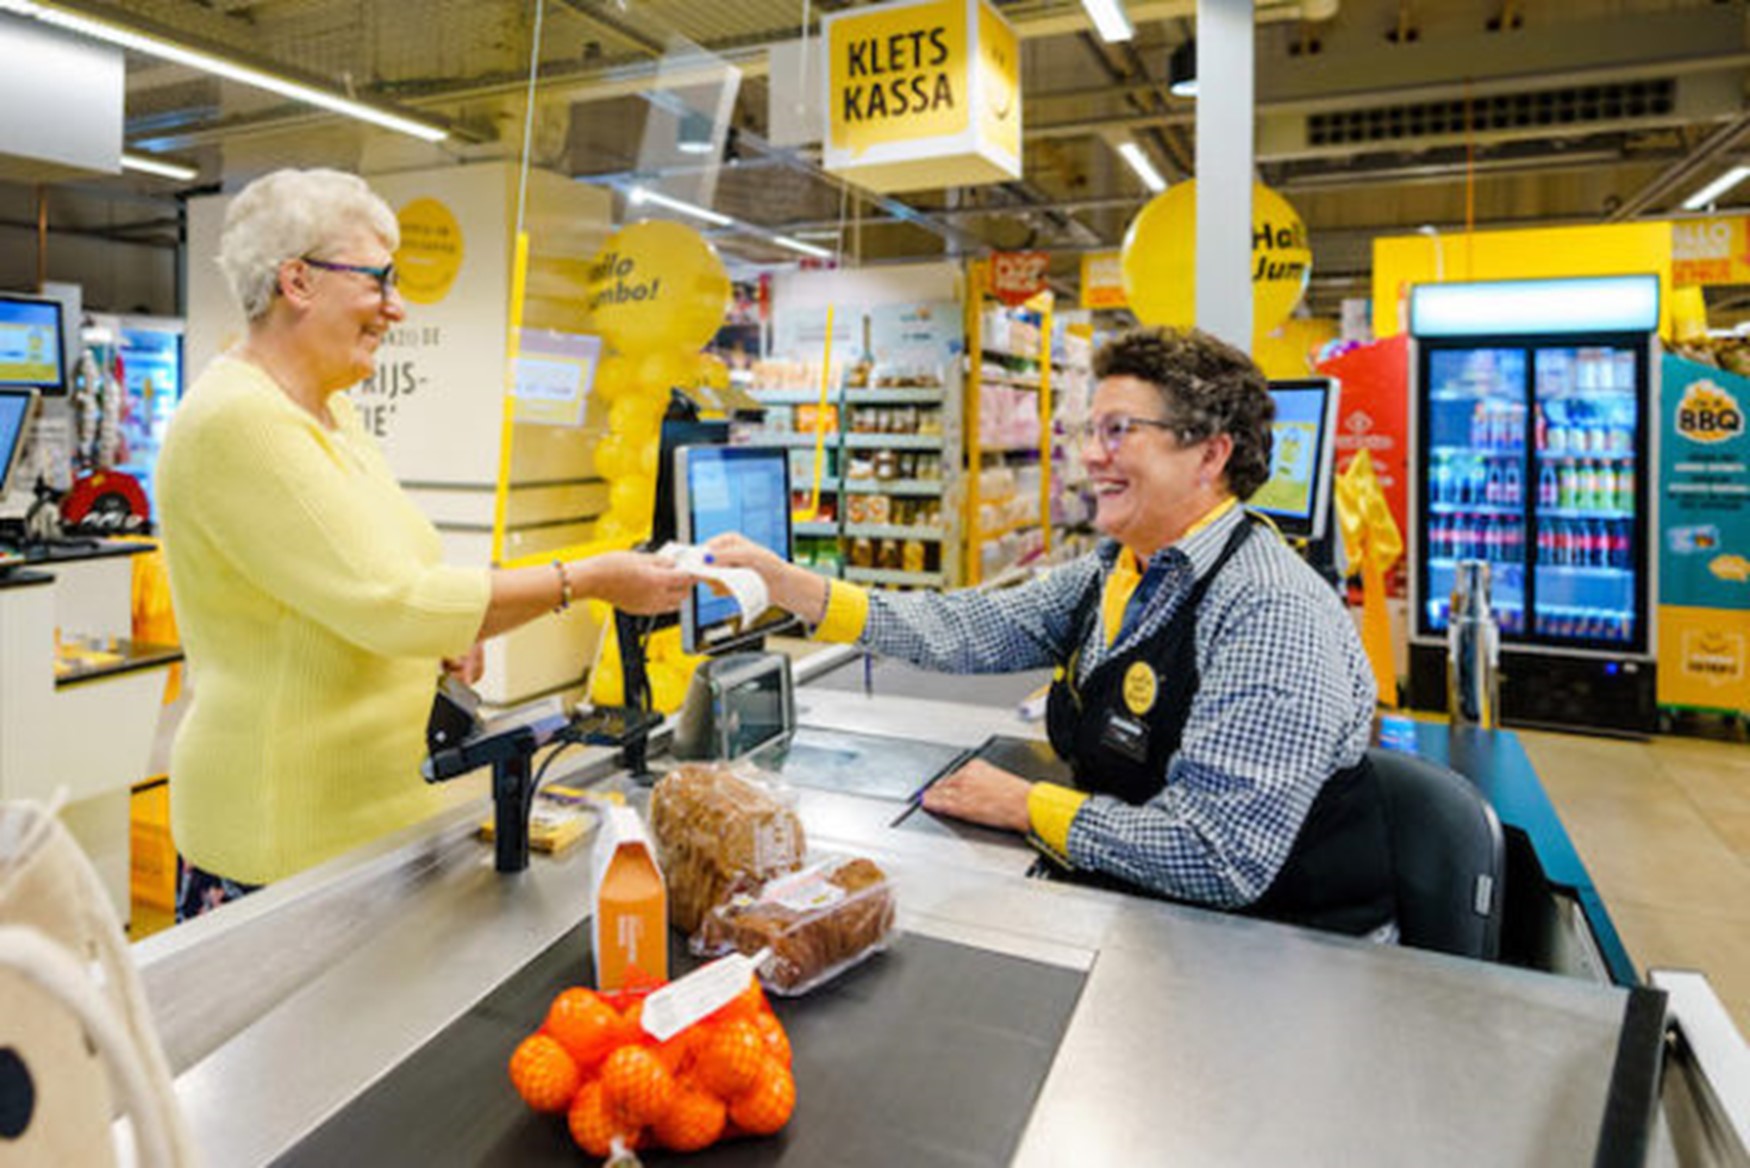 Uma iniciativa de uma cadeia de supermercados para estar mais próxima dos clientes Fonte: DR